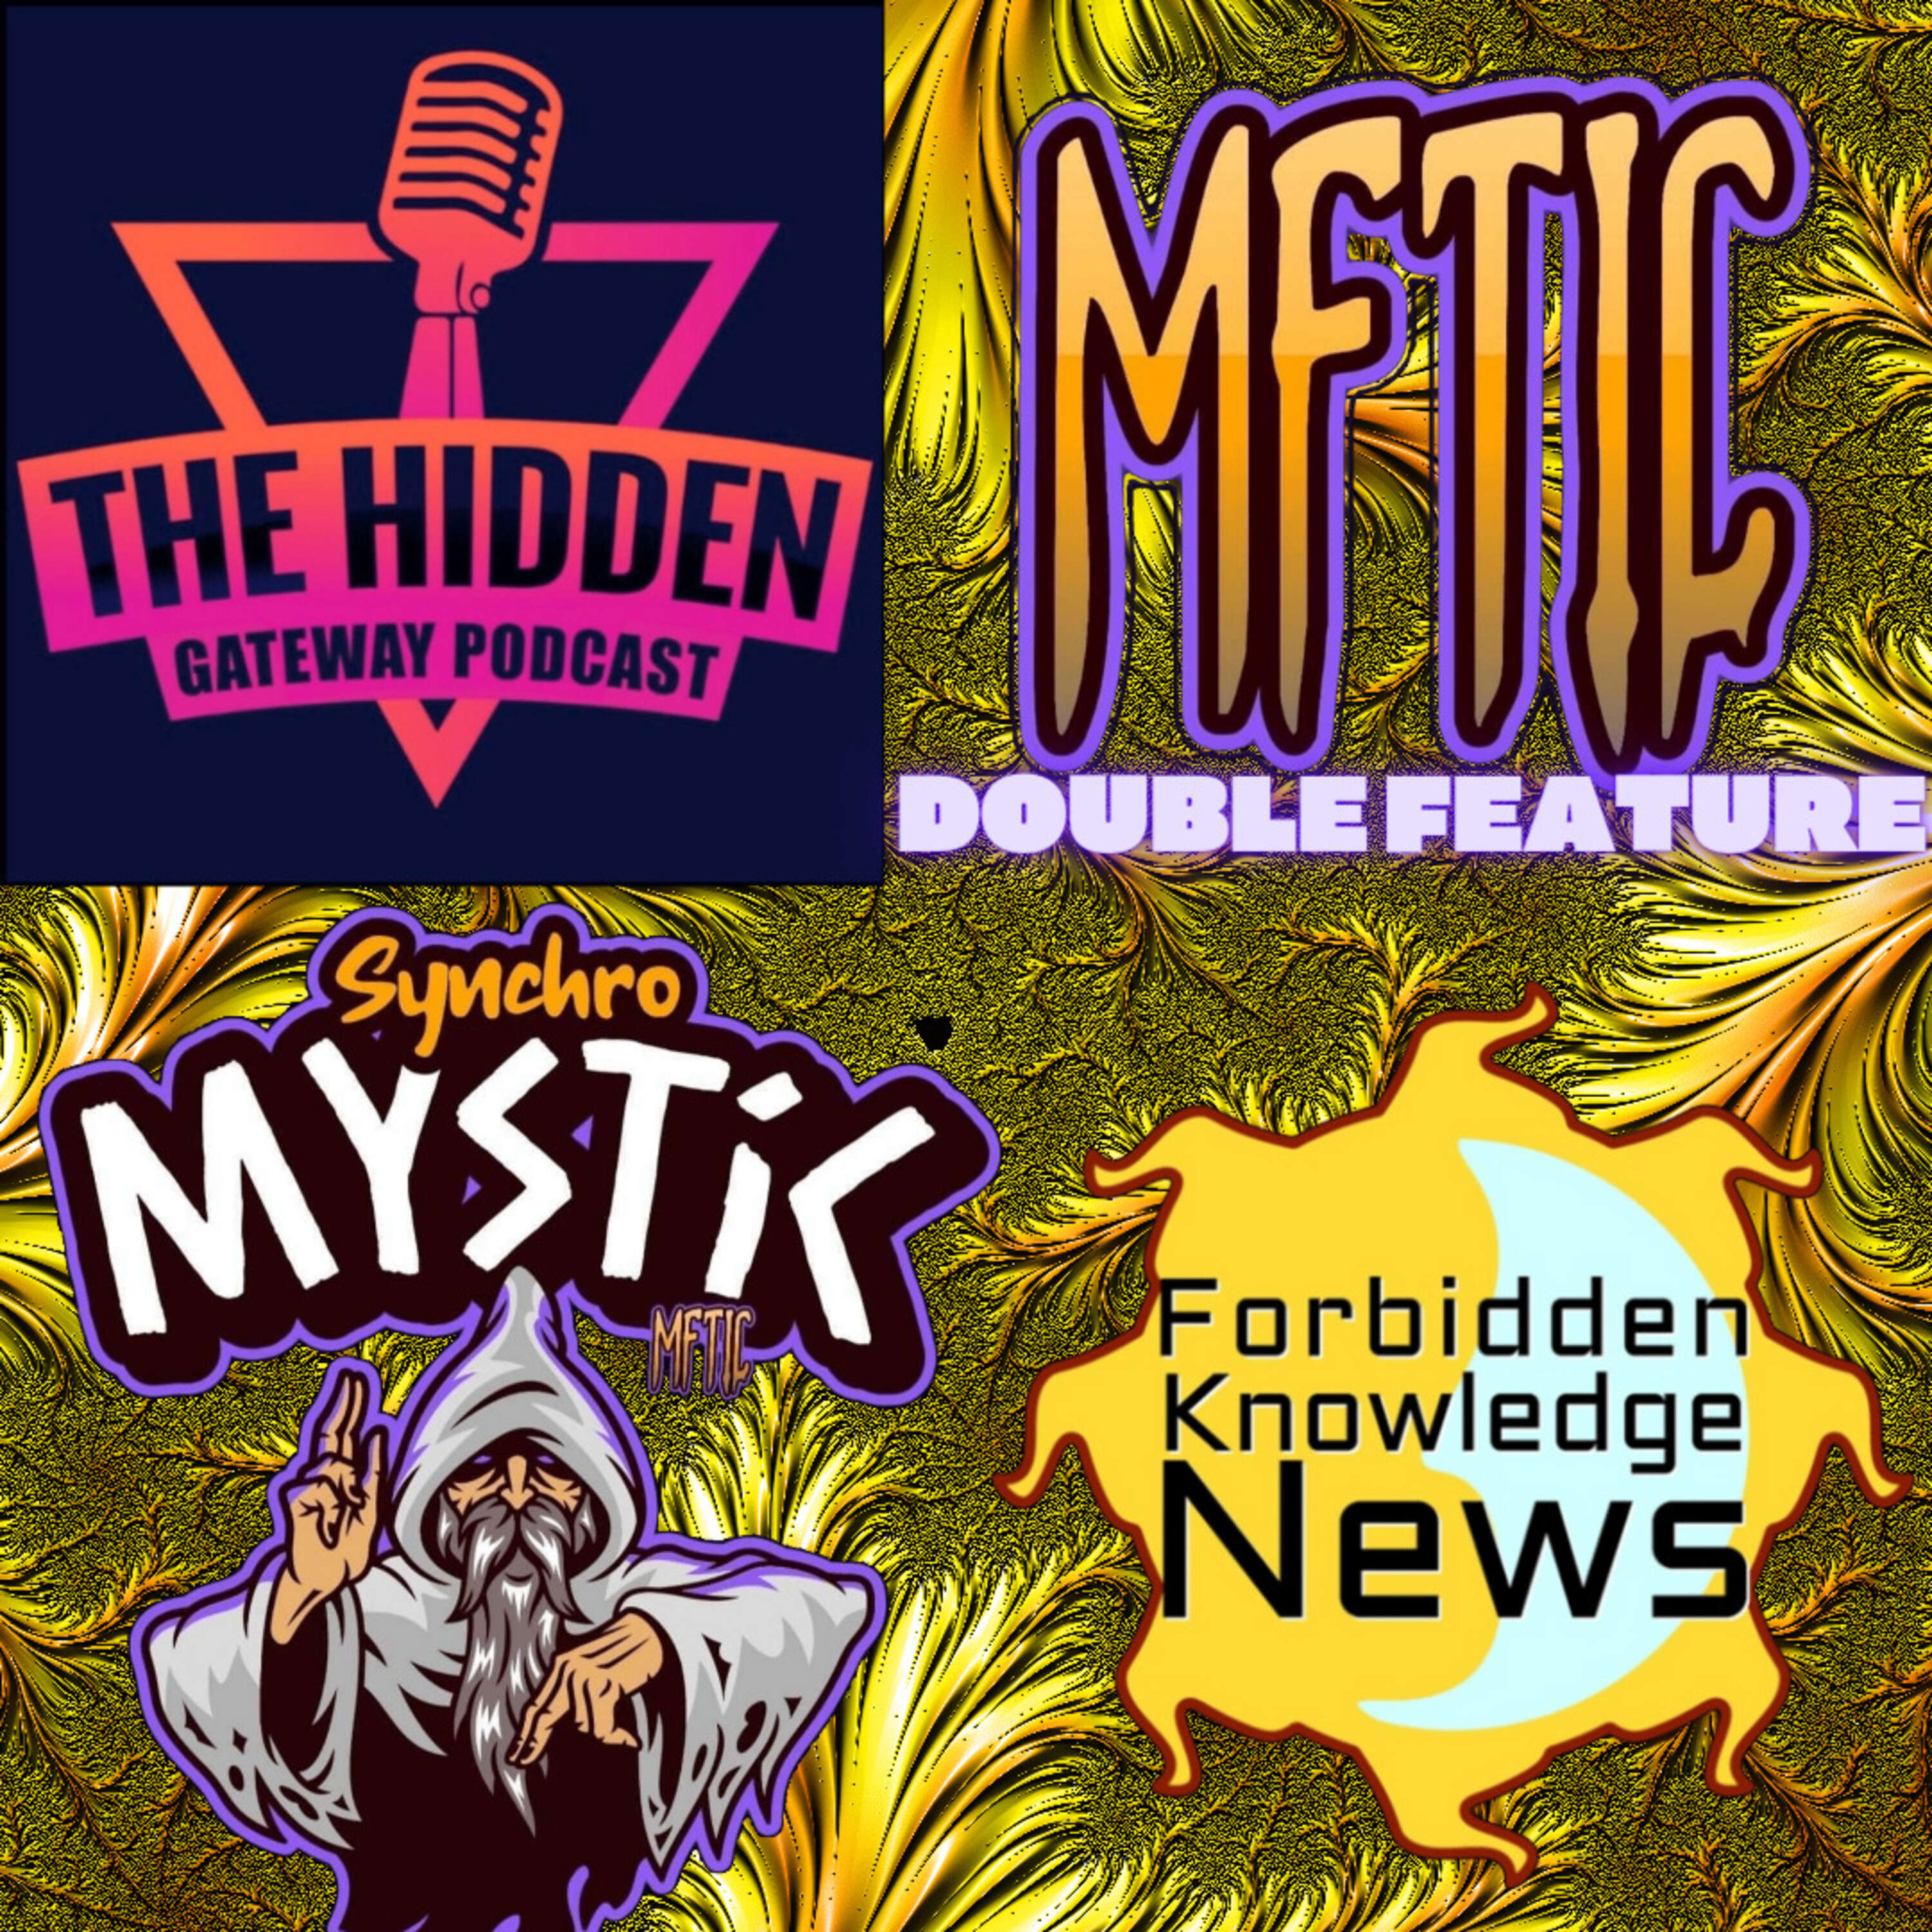 Hidden Gateway + Forbidden Knowledge News Bonus Feature!